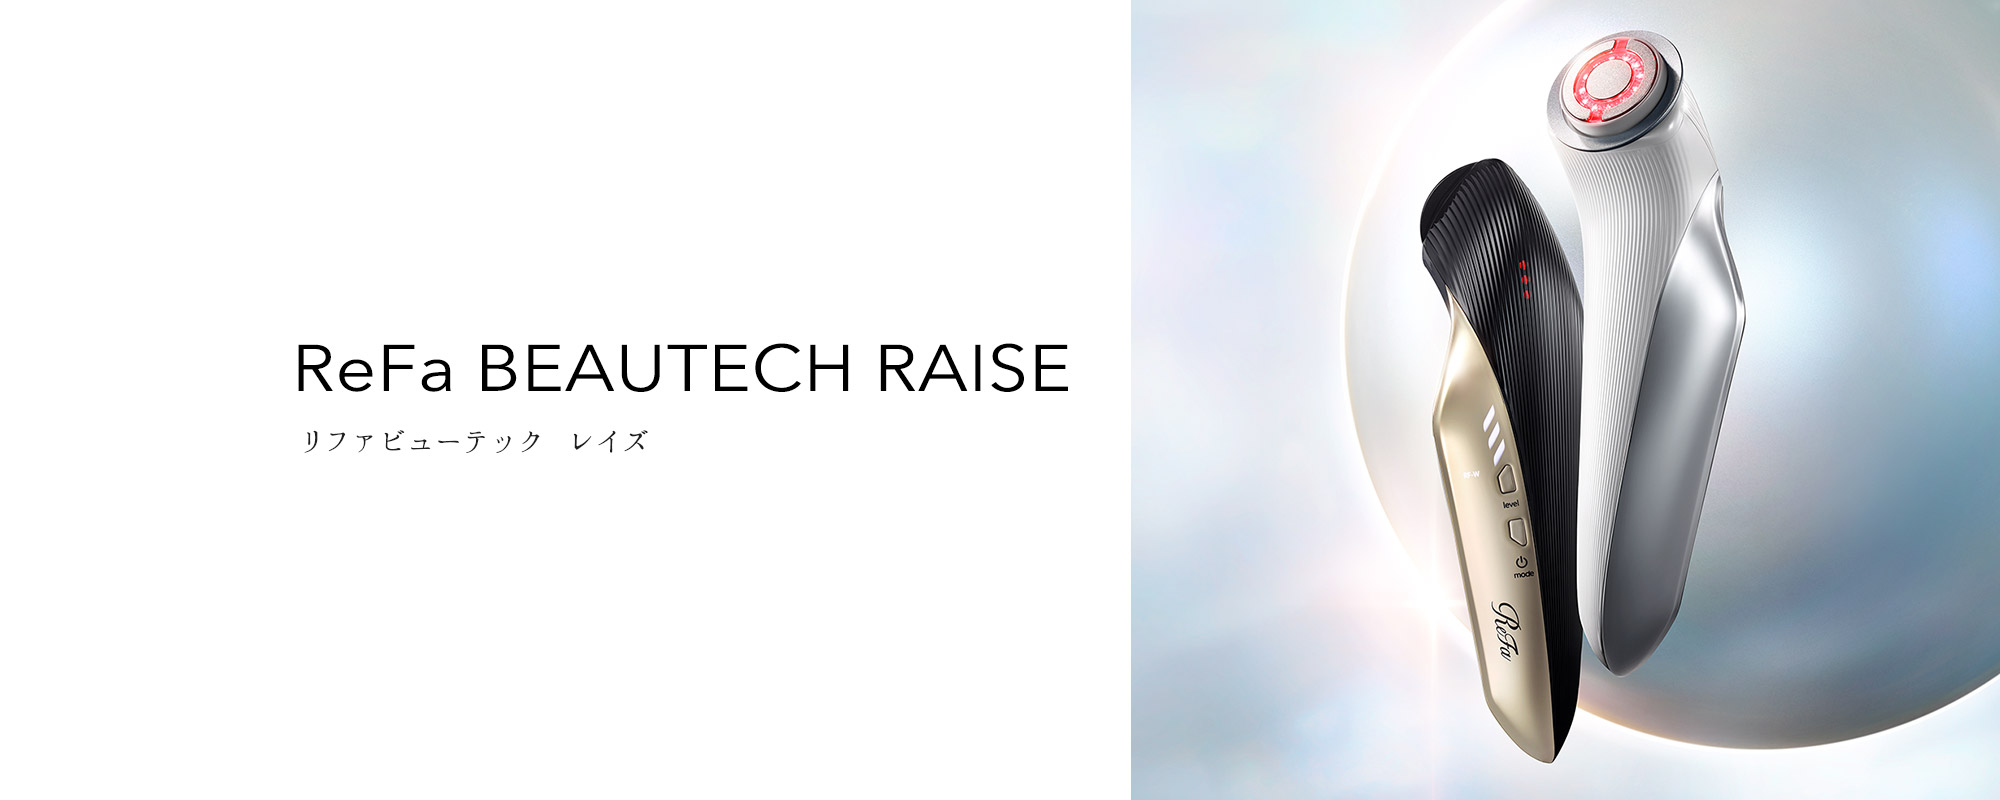 リファビューテック レイズ - ReFa BEAUTECH RAISE | 商品情報 | ReFa（リファ）公式ブランドサイト